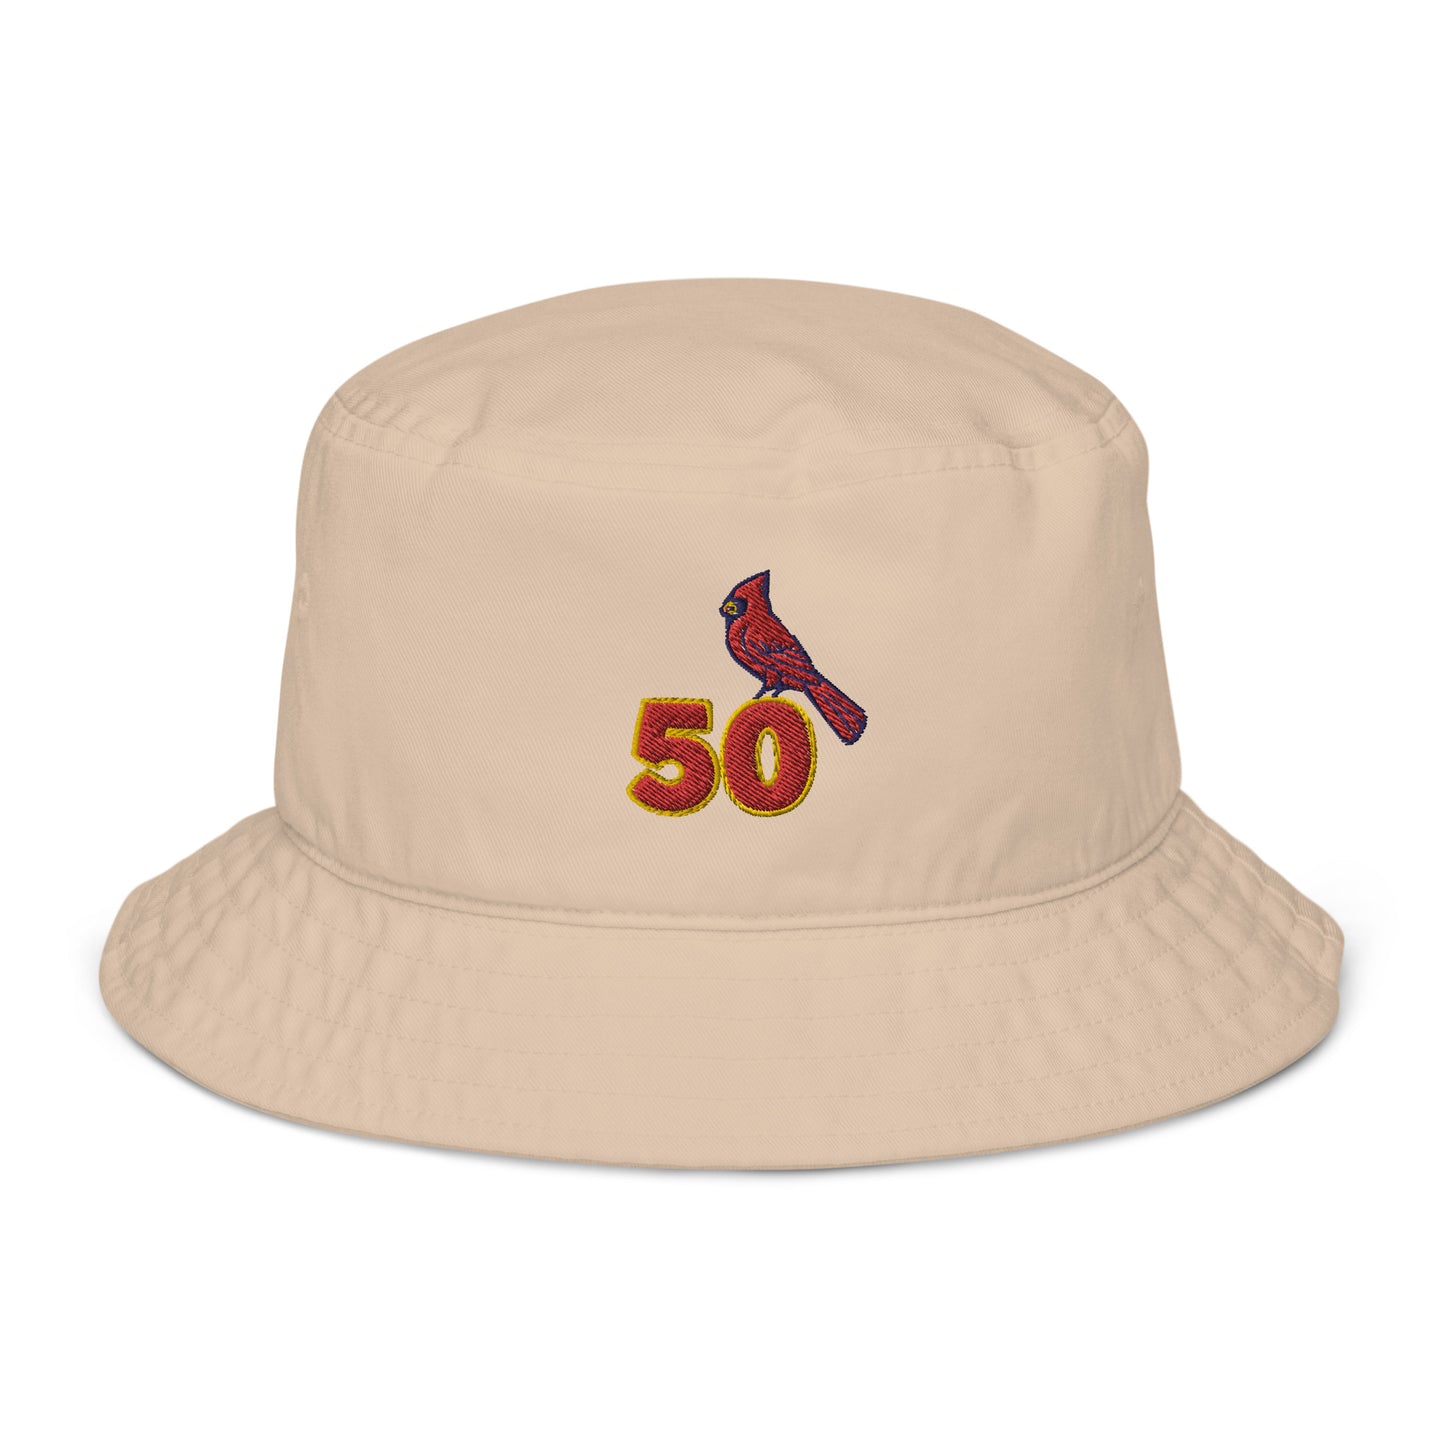 Adam Wainwright / Waino Hat / St. Louis Cardinals Organic bucket hat